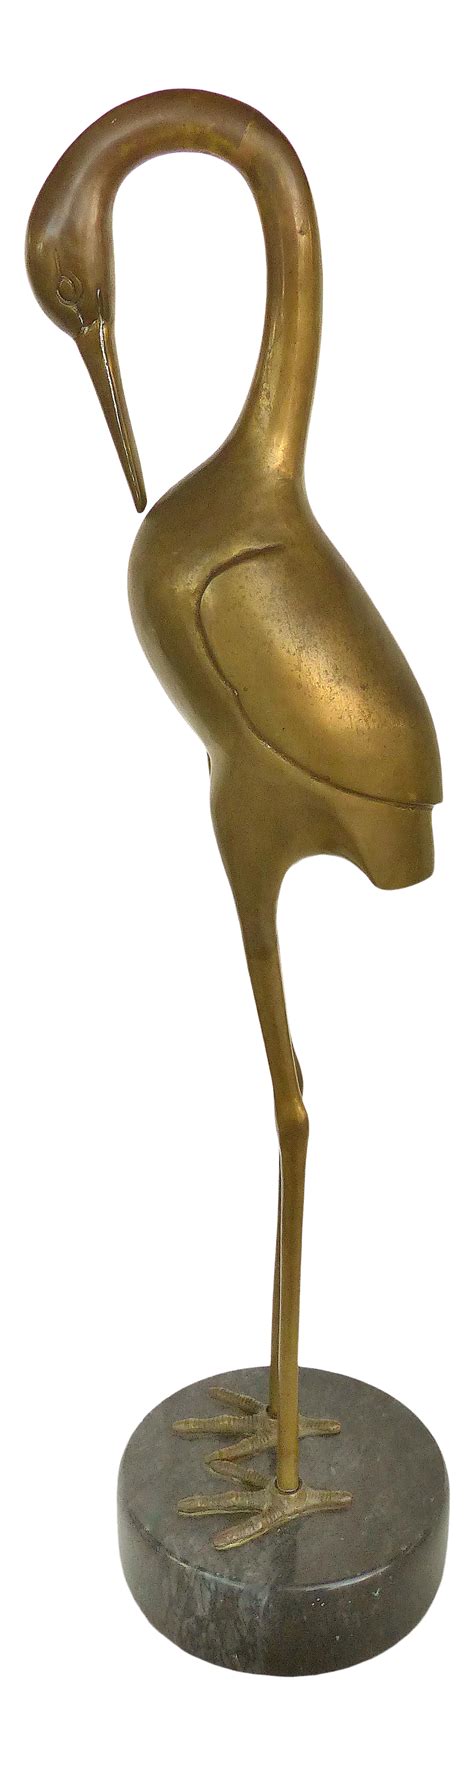 Vintage Brass Crane Bird Sculpture on a Marble Base | Bird sculpture, Crane bird, Sculpture